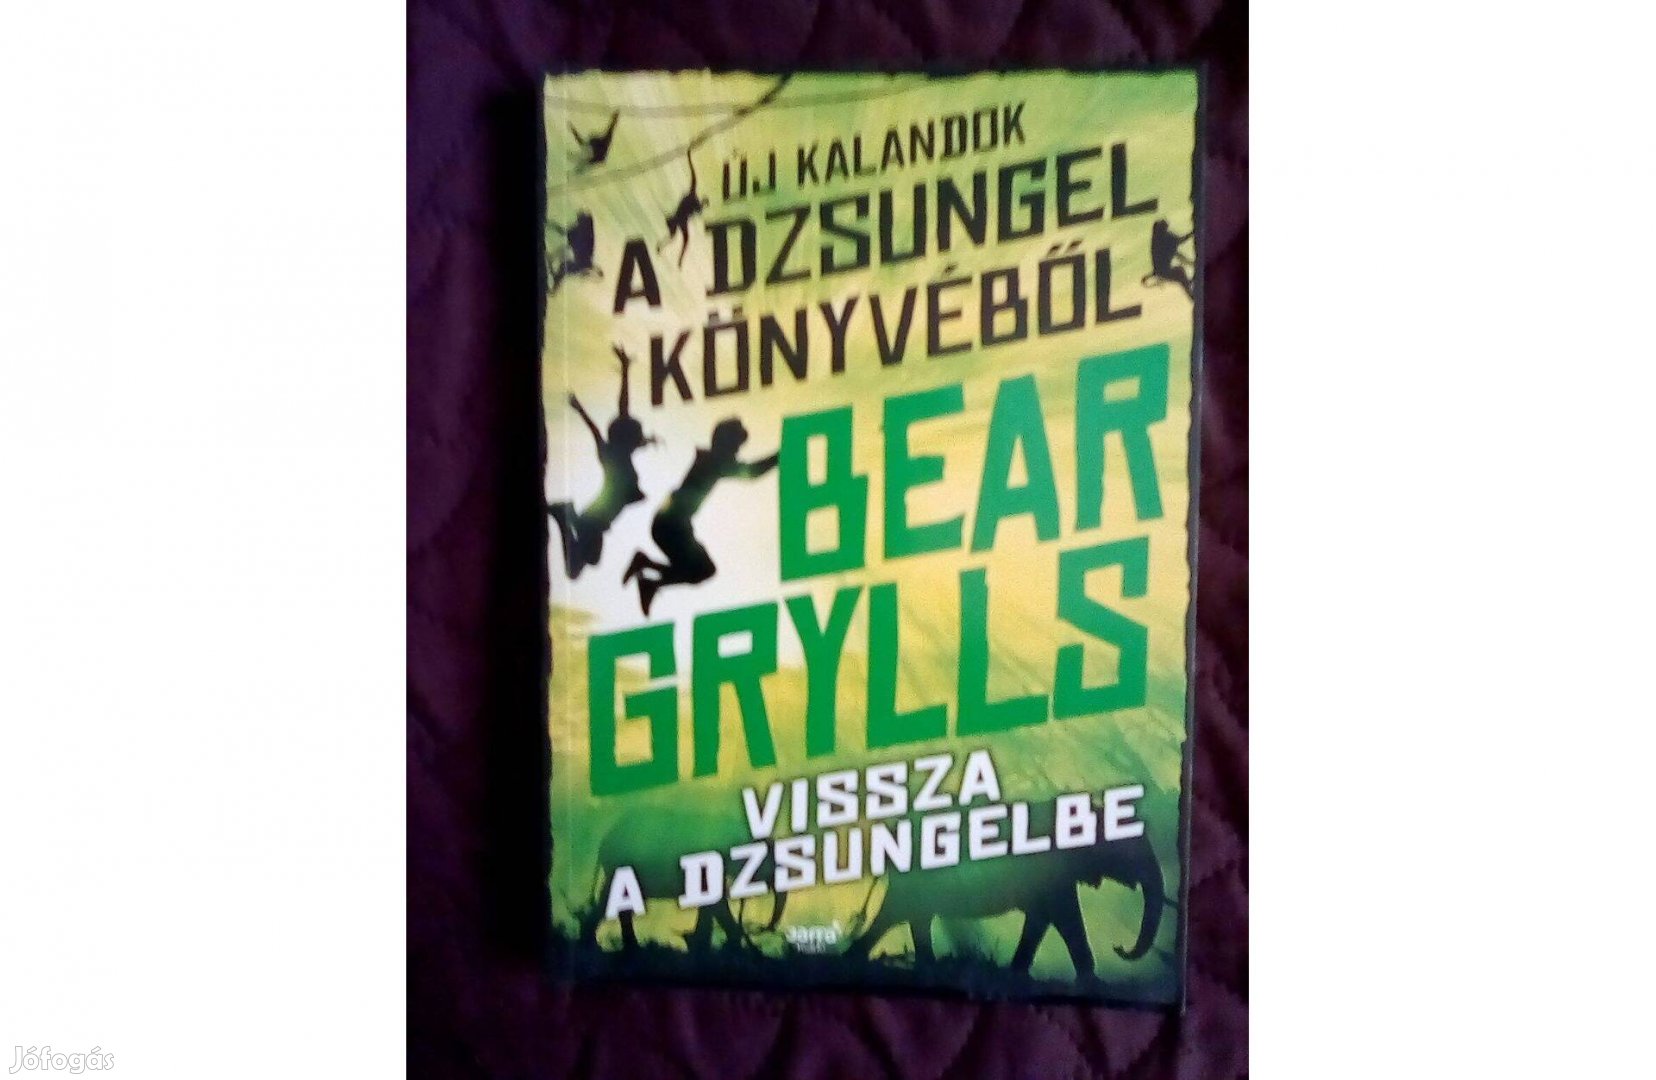 Bear Grylls:Vissza a dzsungelbe c. könyv eladó olcsón